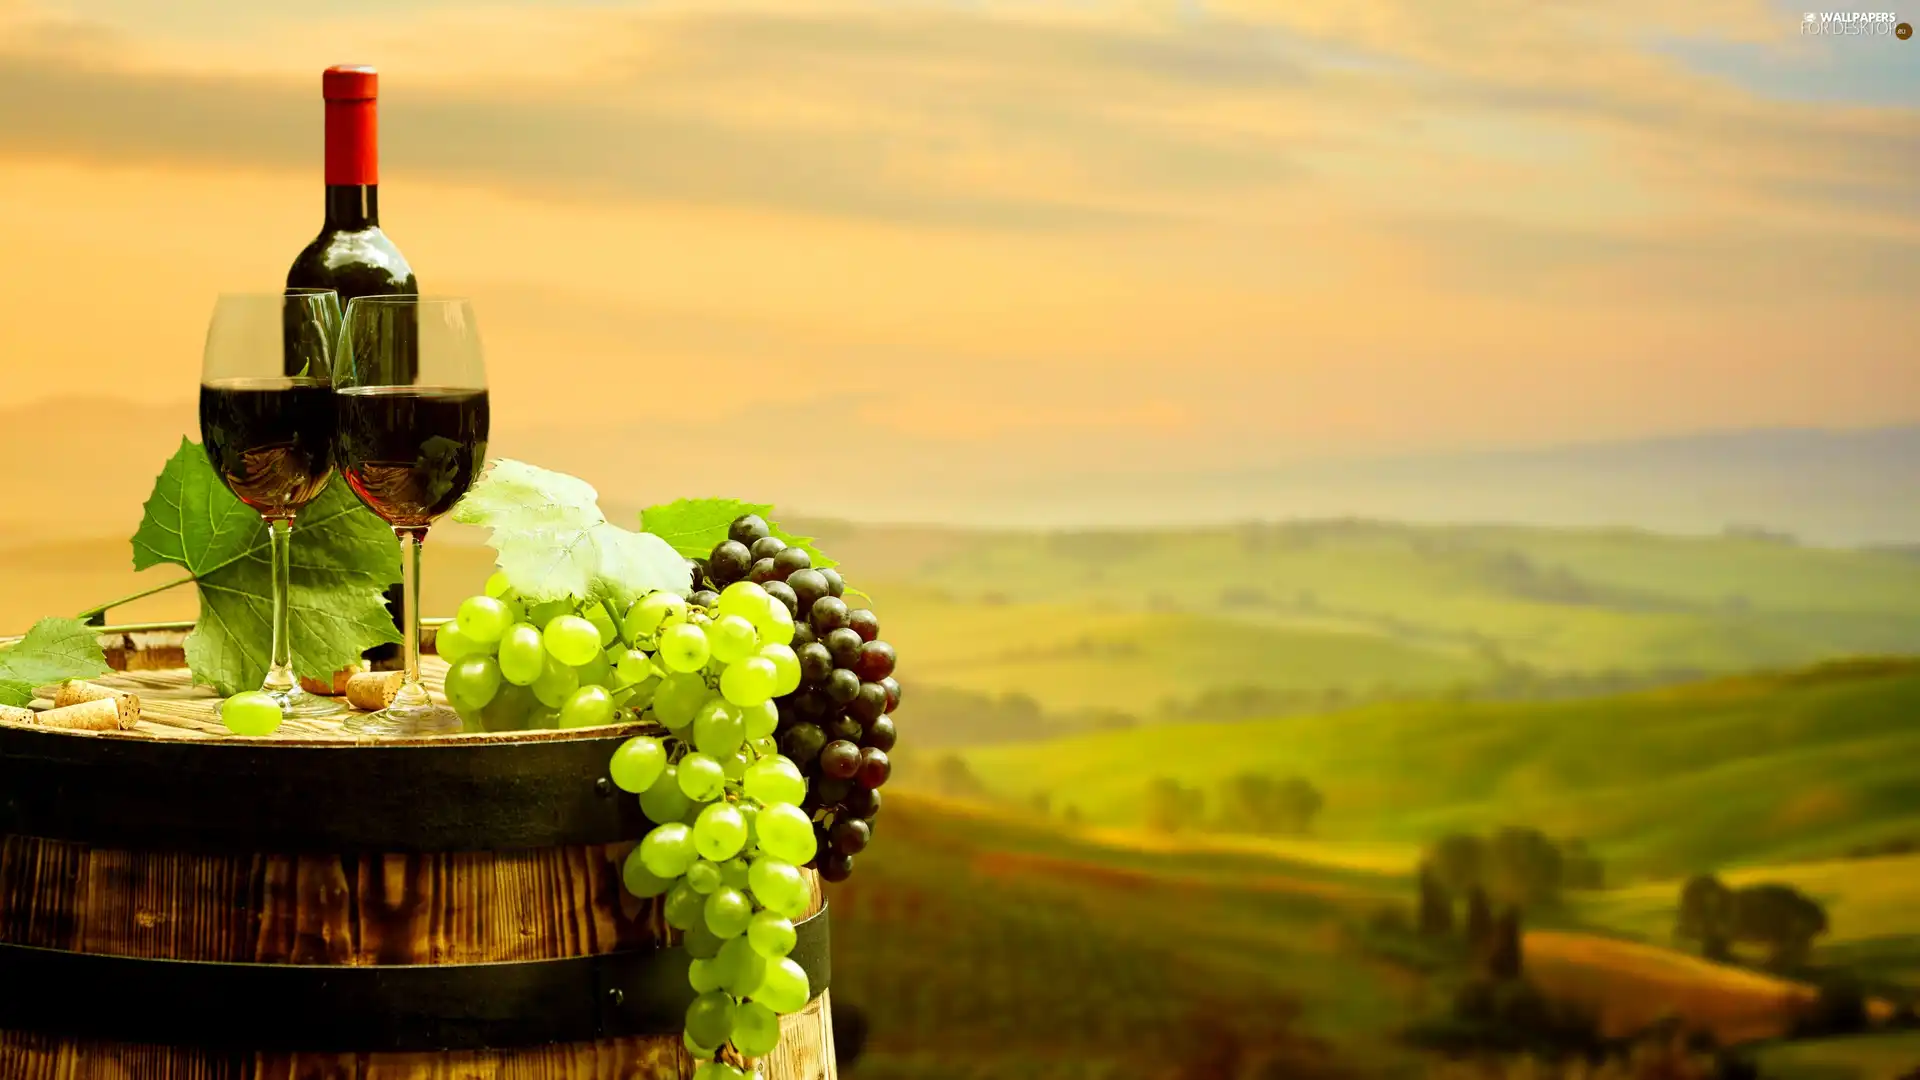 Wine, Bottle, barrel, landscape, Grapes, glasses